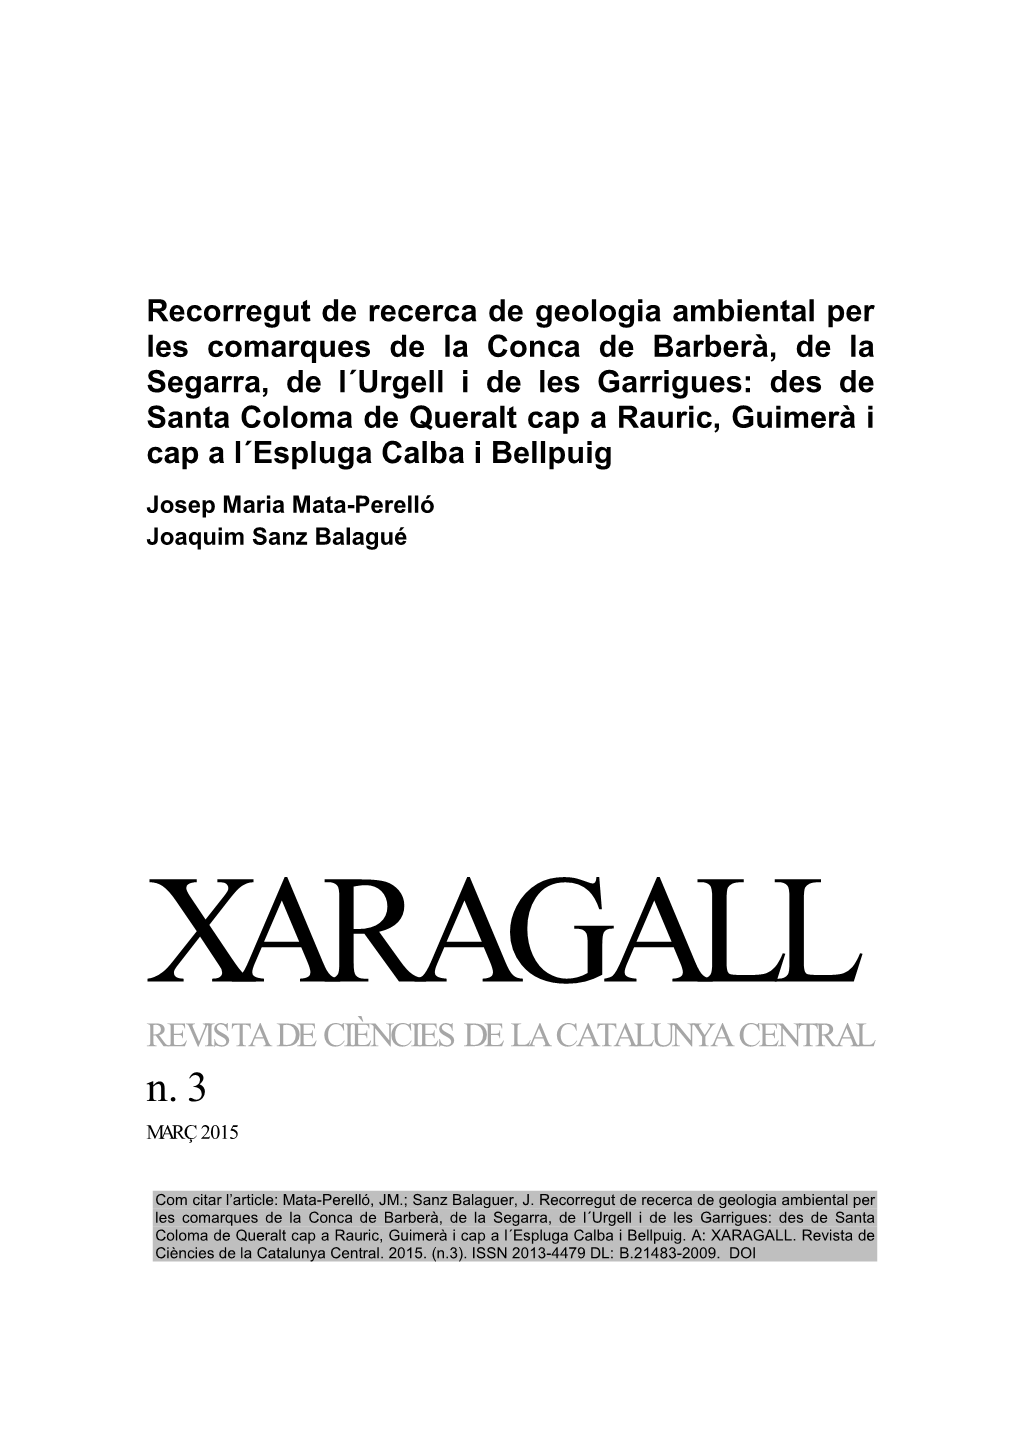 XARAGALL REVISTA DE CIÈNCIES DE LA CATALUNYA CENTRAL N